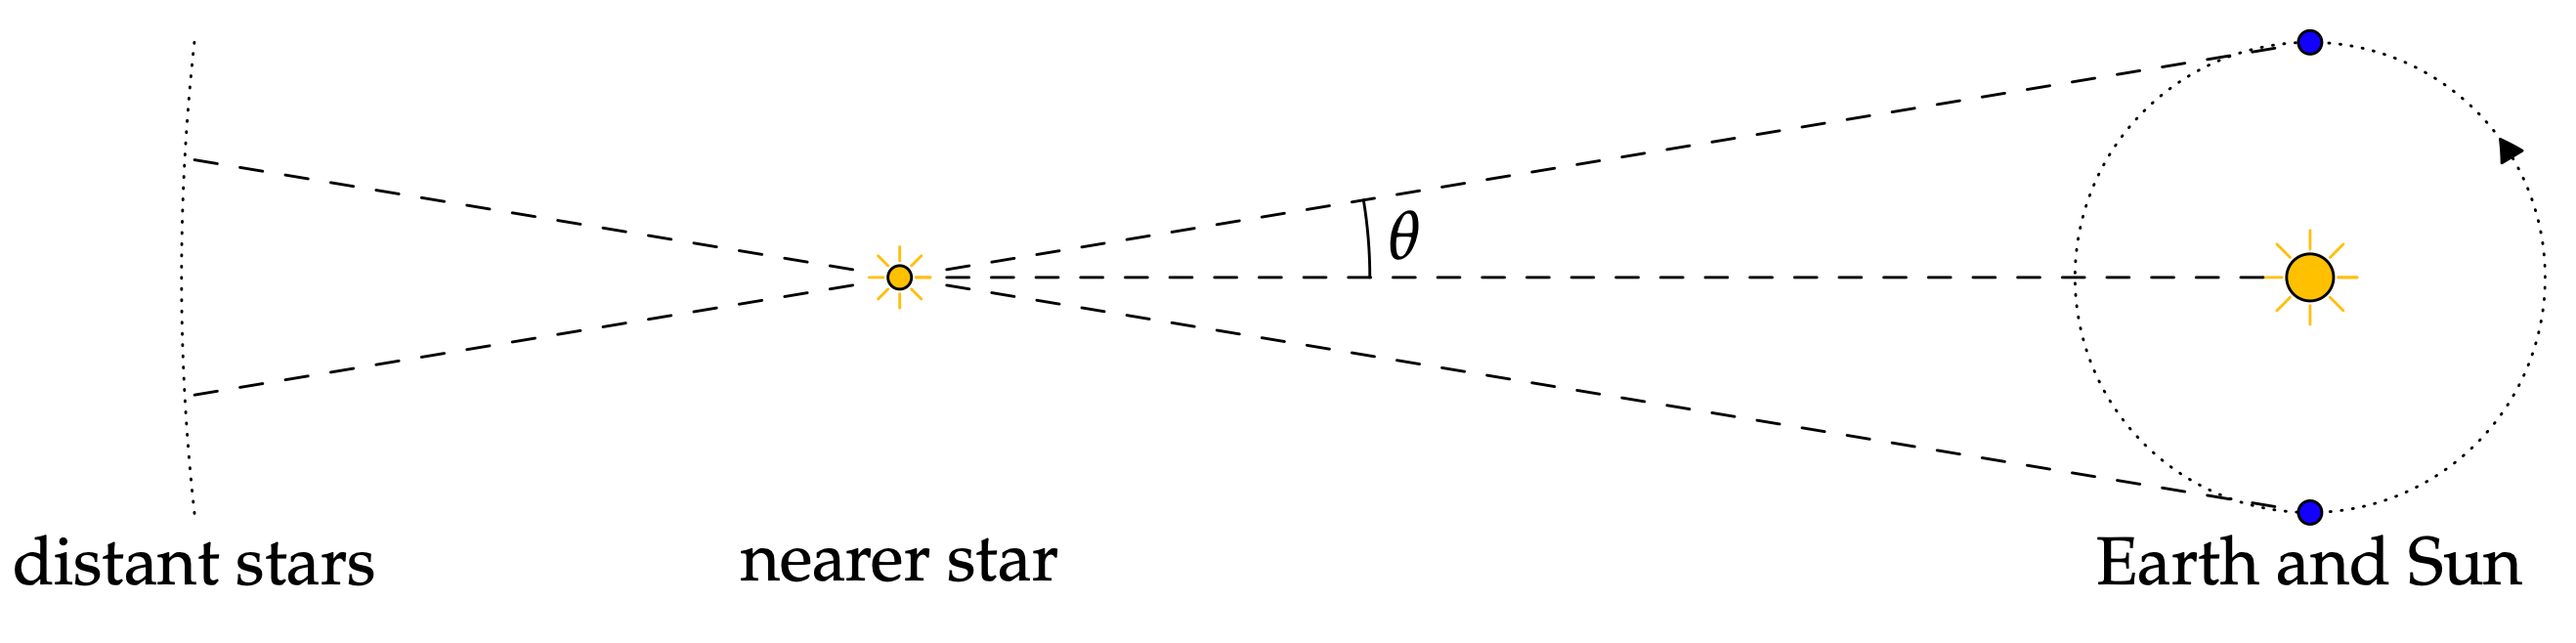 exemple d'astronomie - image de www.math.uci.edu